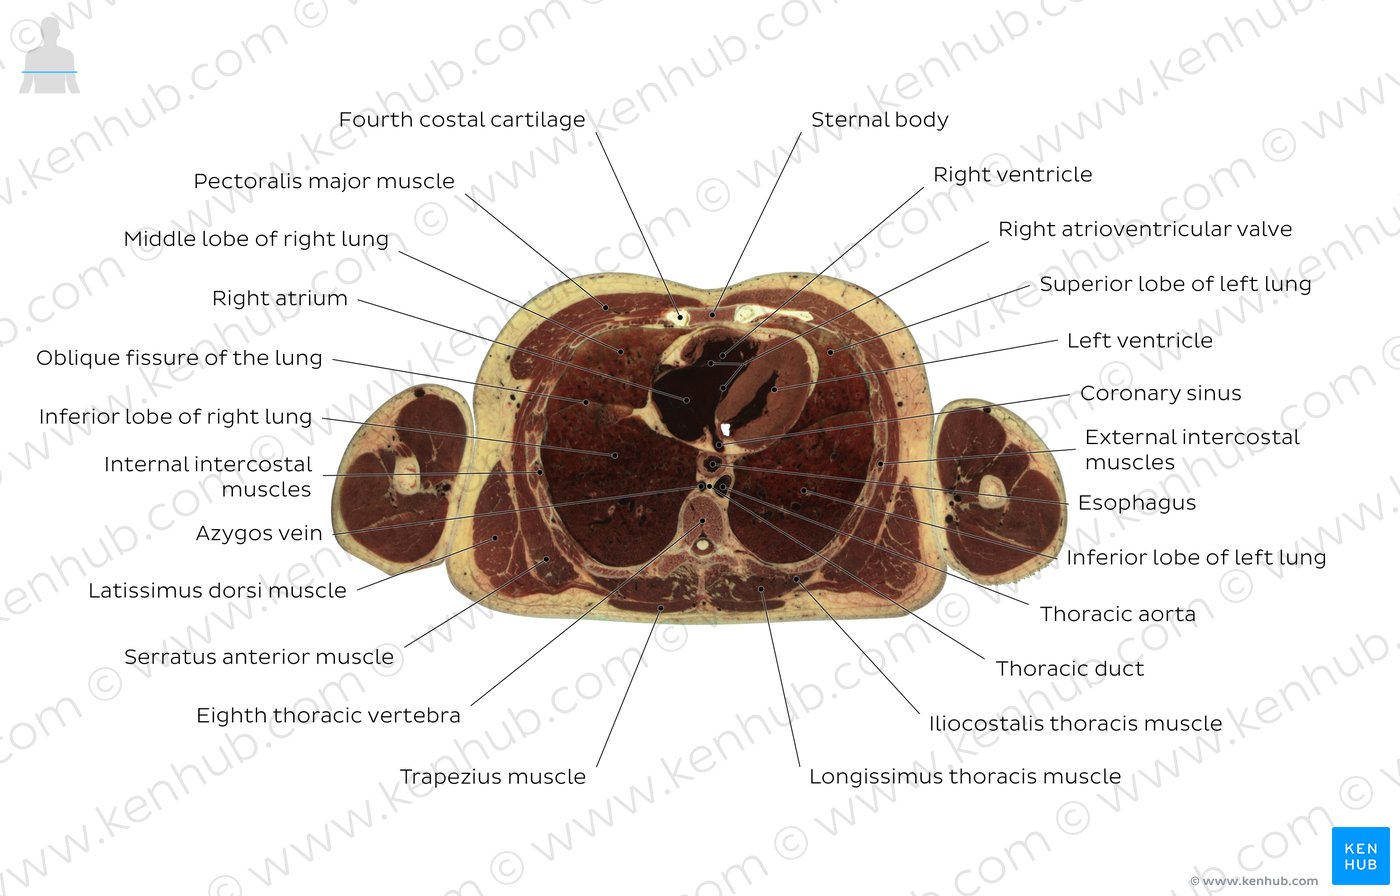 Eight thoracic vertebra level: Overview